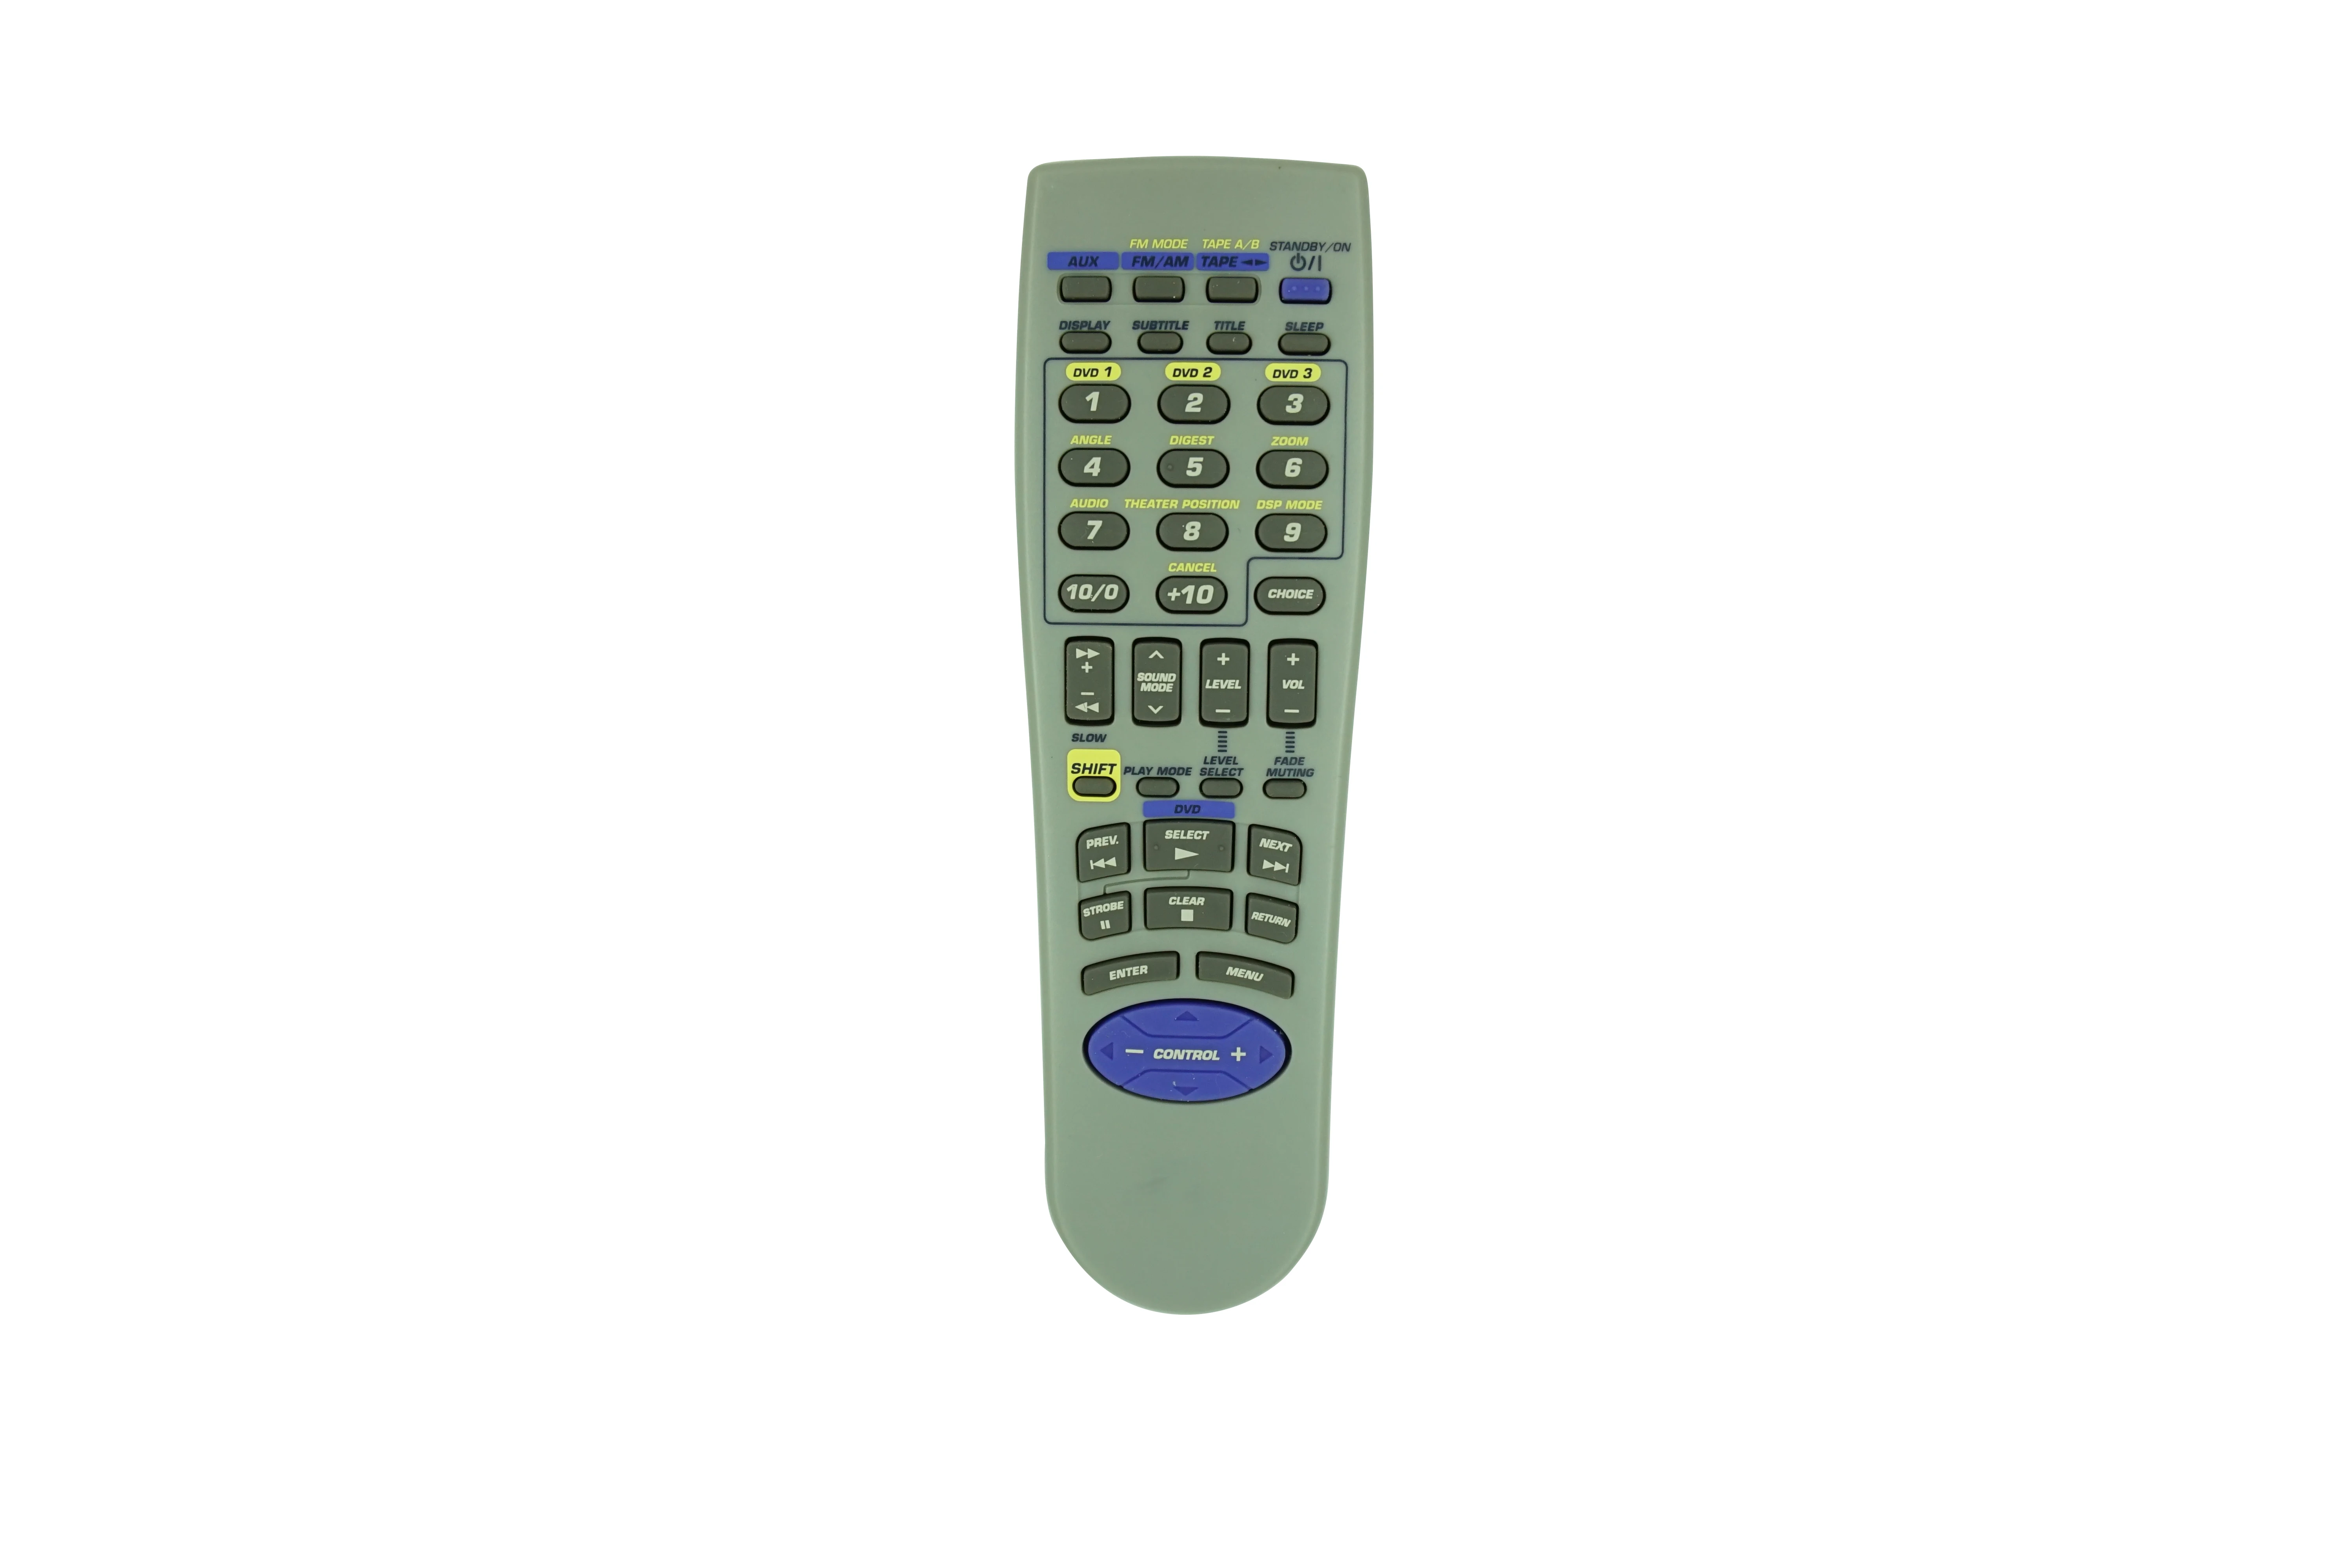 

Remote Control For JVC RM-SMXDVA9A RM-SMXDVA9R RM-SMXDVB10U MX-DVB10 CA-MXDVB10 SP-MXDVB10 Compact Component Stereo System